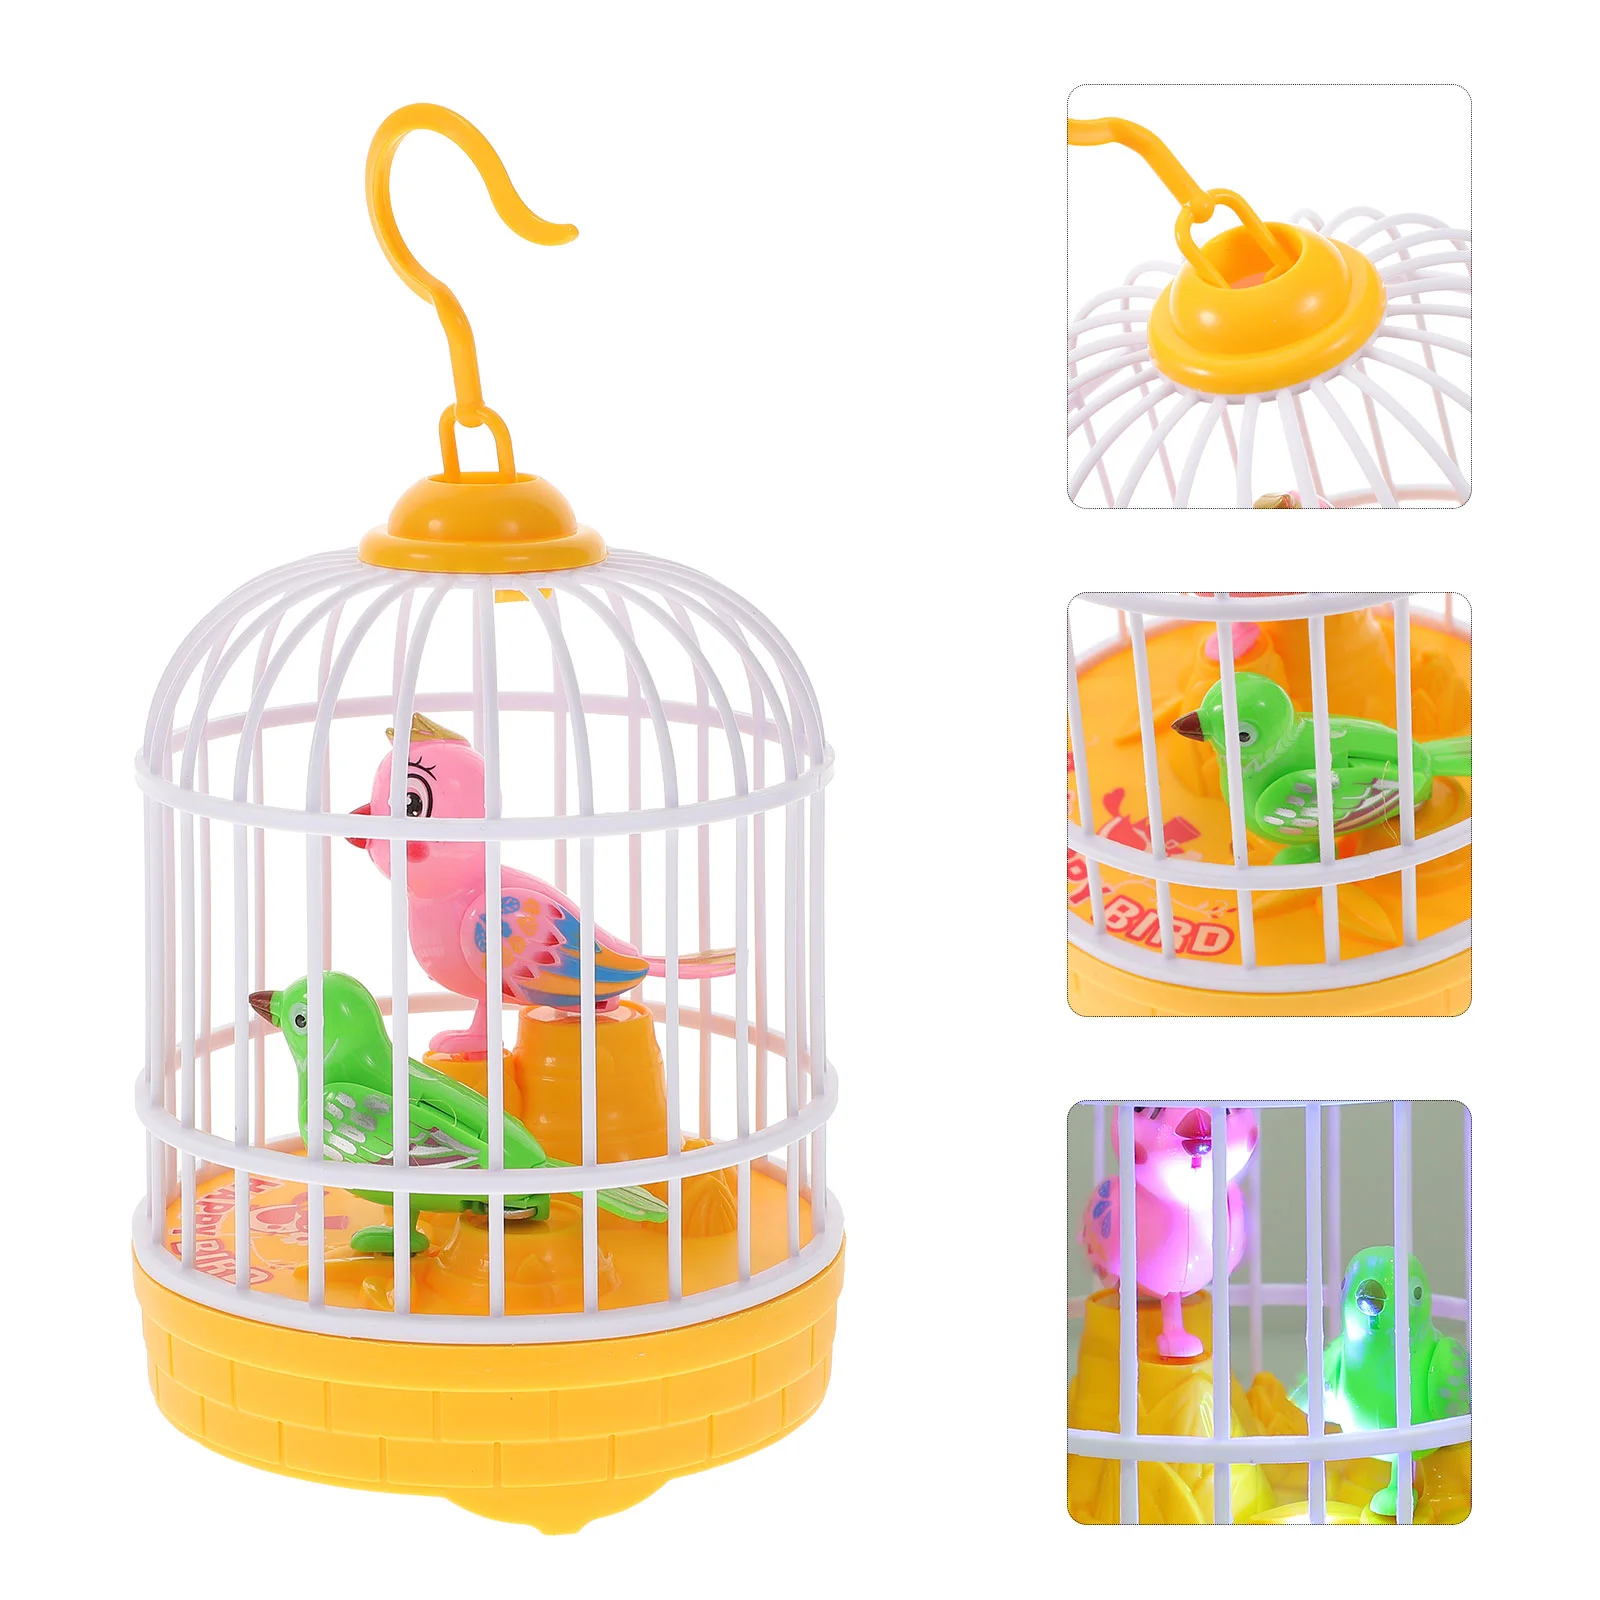 

Поющая птичья клетка с голосовым управлением, электрическая Интерактивная птица для детей на день рождения, школьный фотоподарок без (желтый)